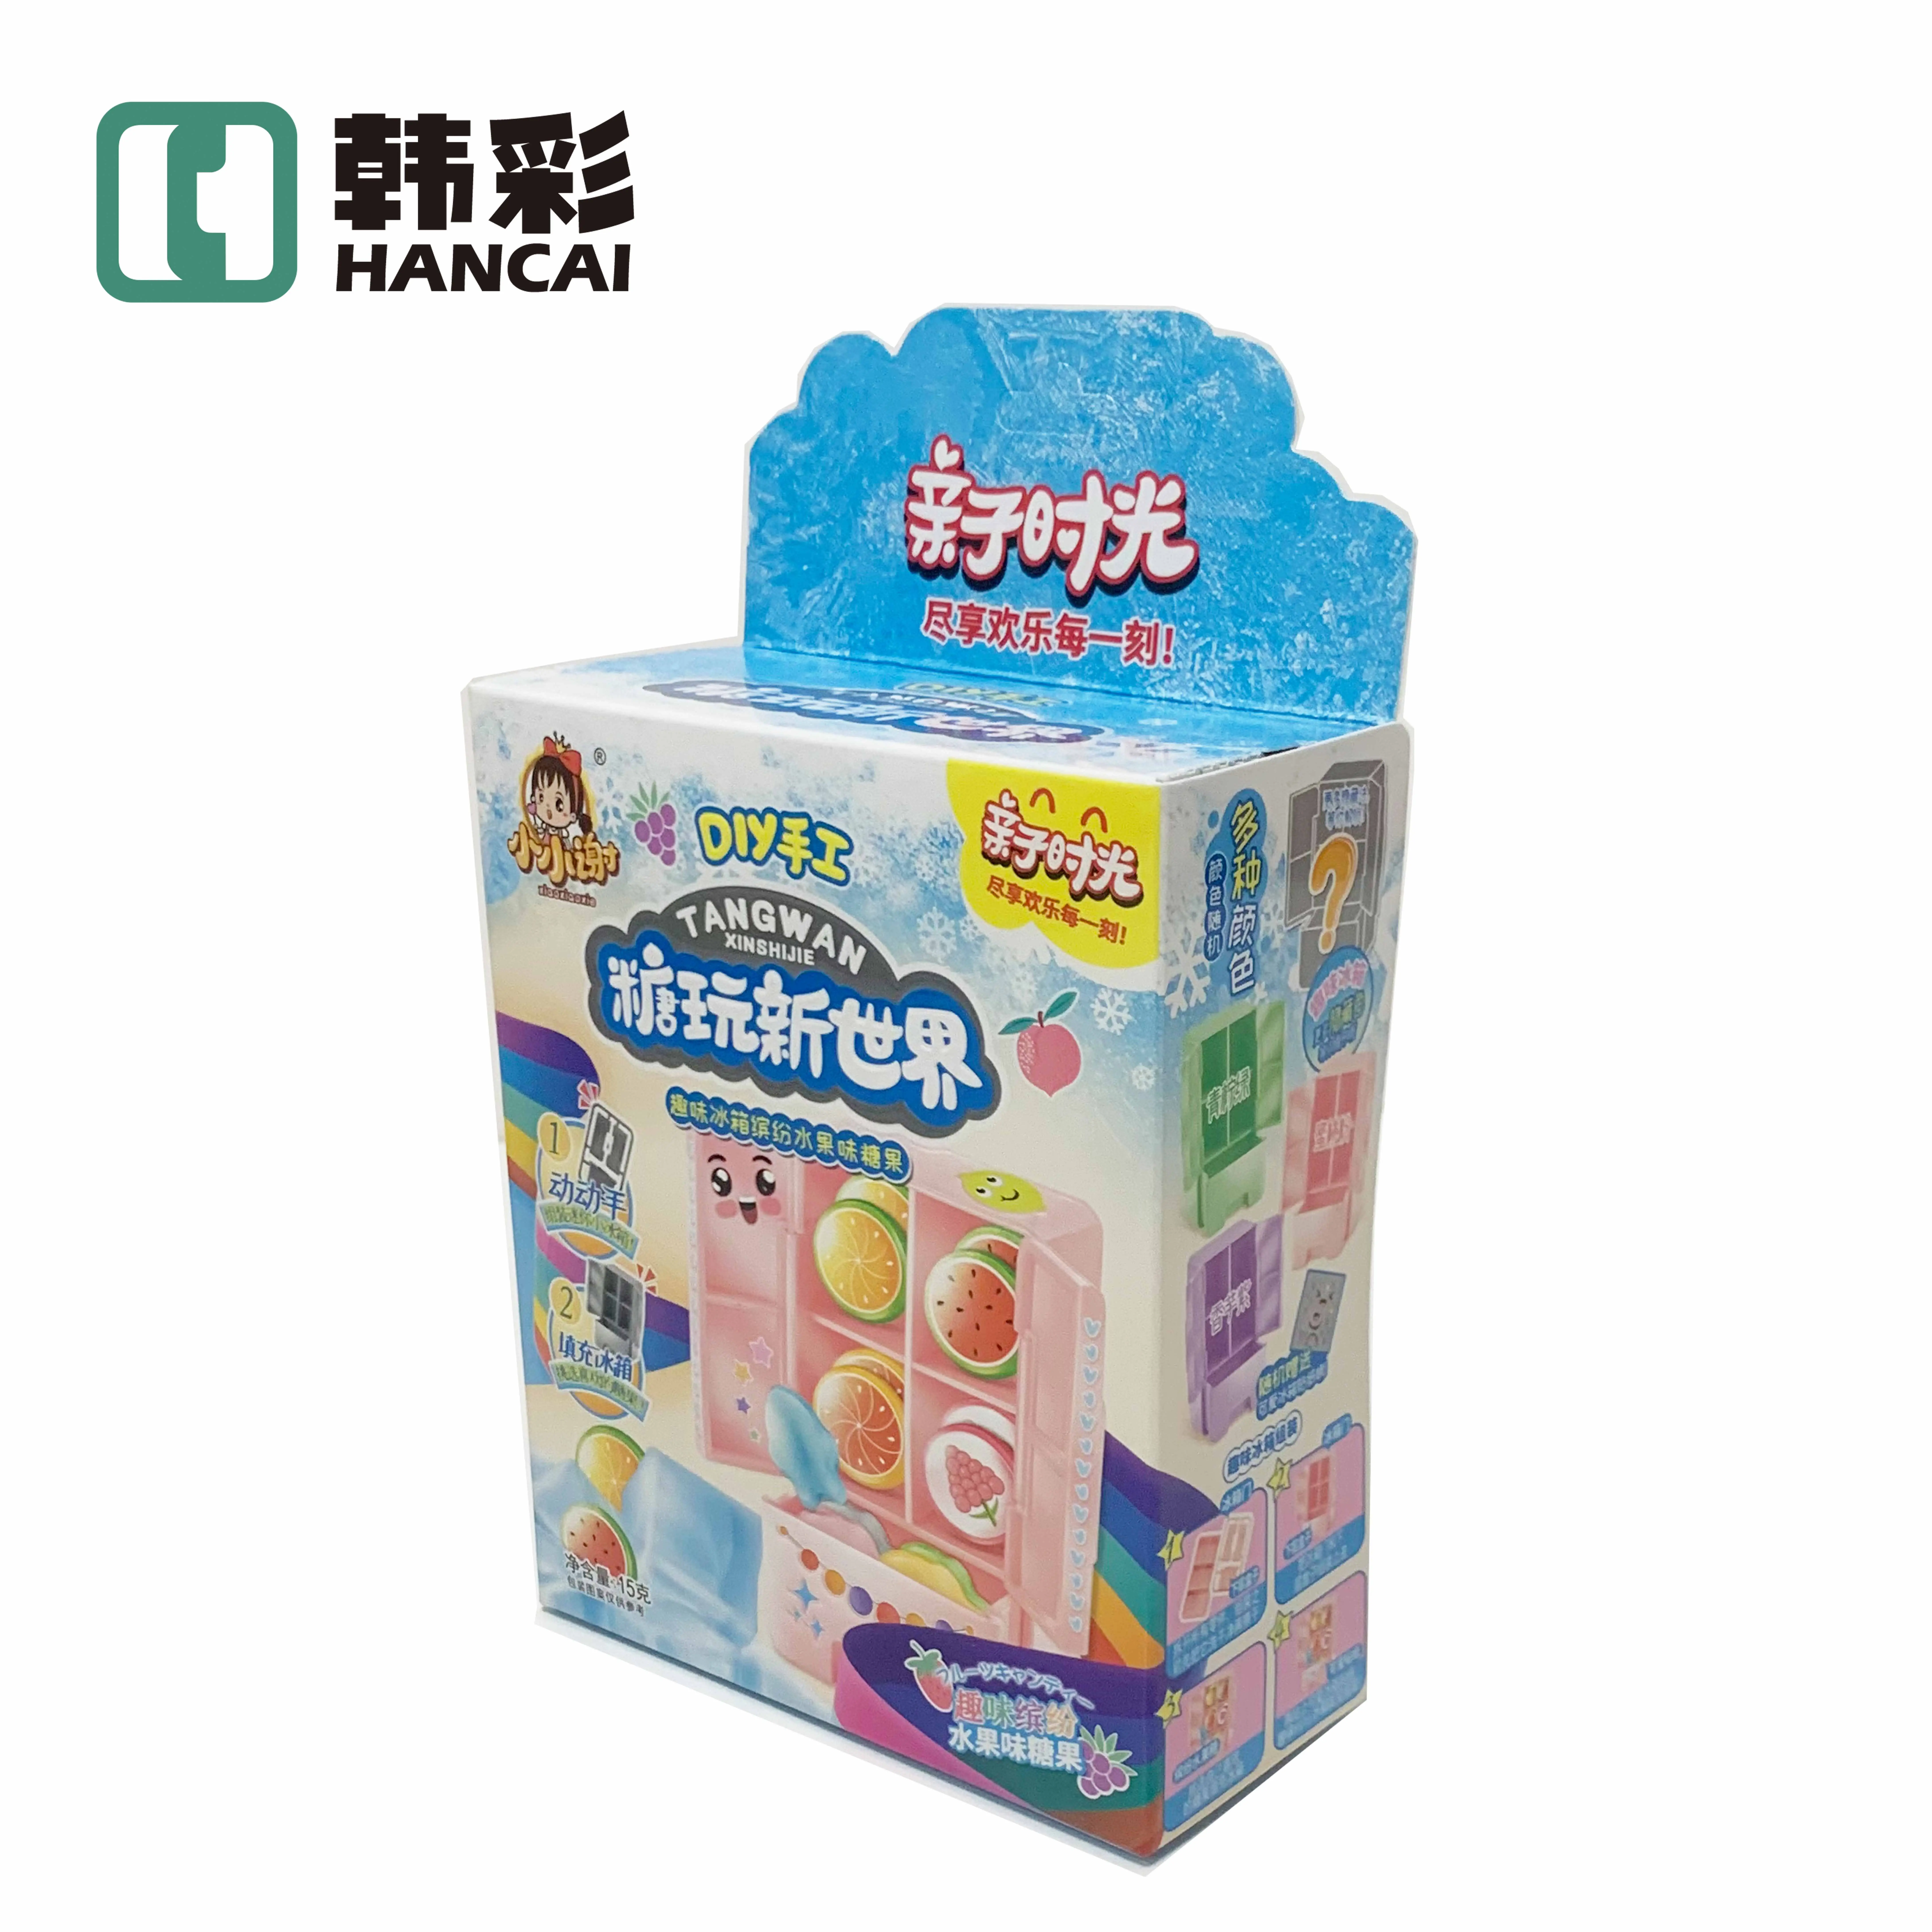 Japanischer konkurrenzfähiger Preis 3 Raster Papier-Lebensmittel-Spielzeug Papier mit Flugzeuglöchern Schachteln